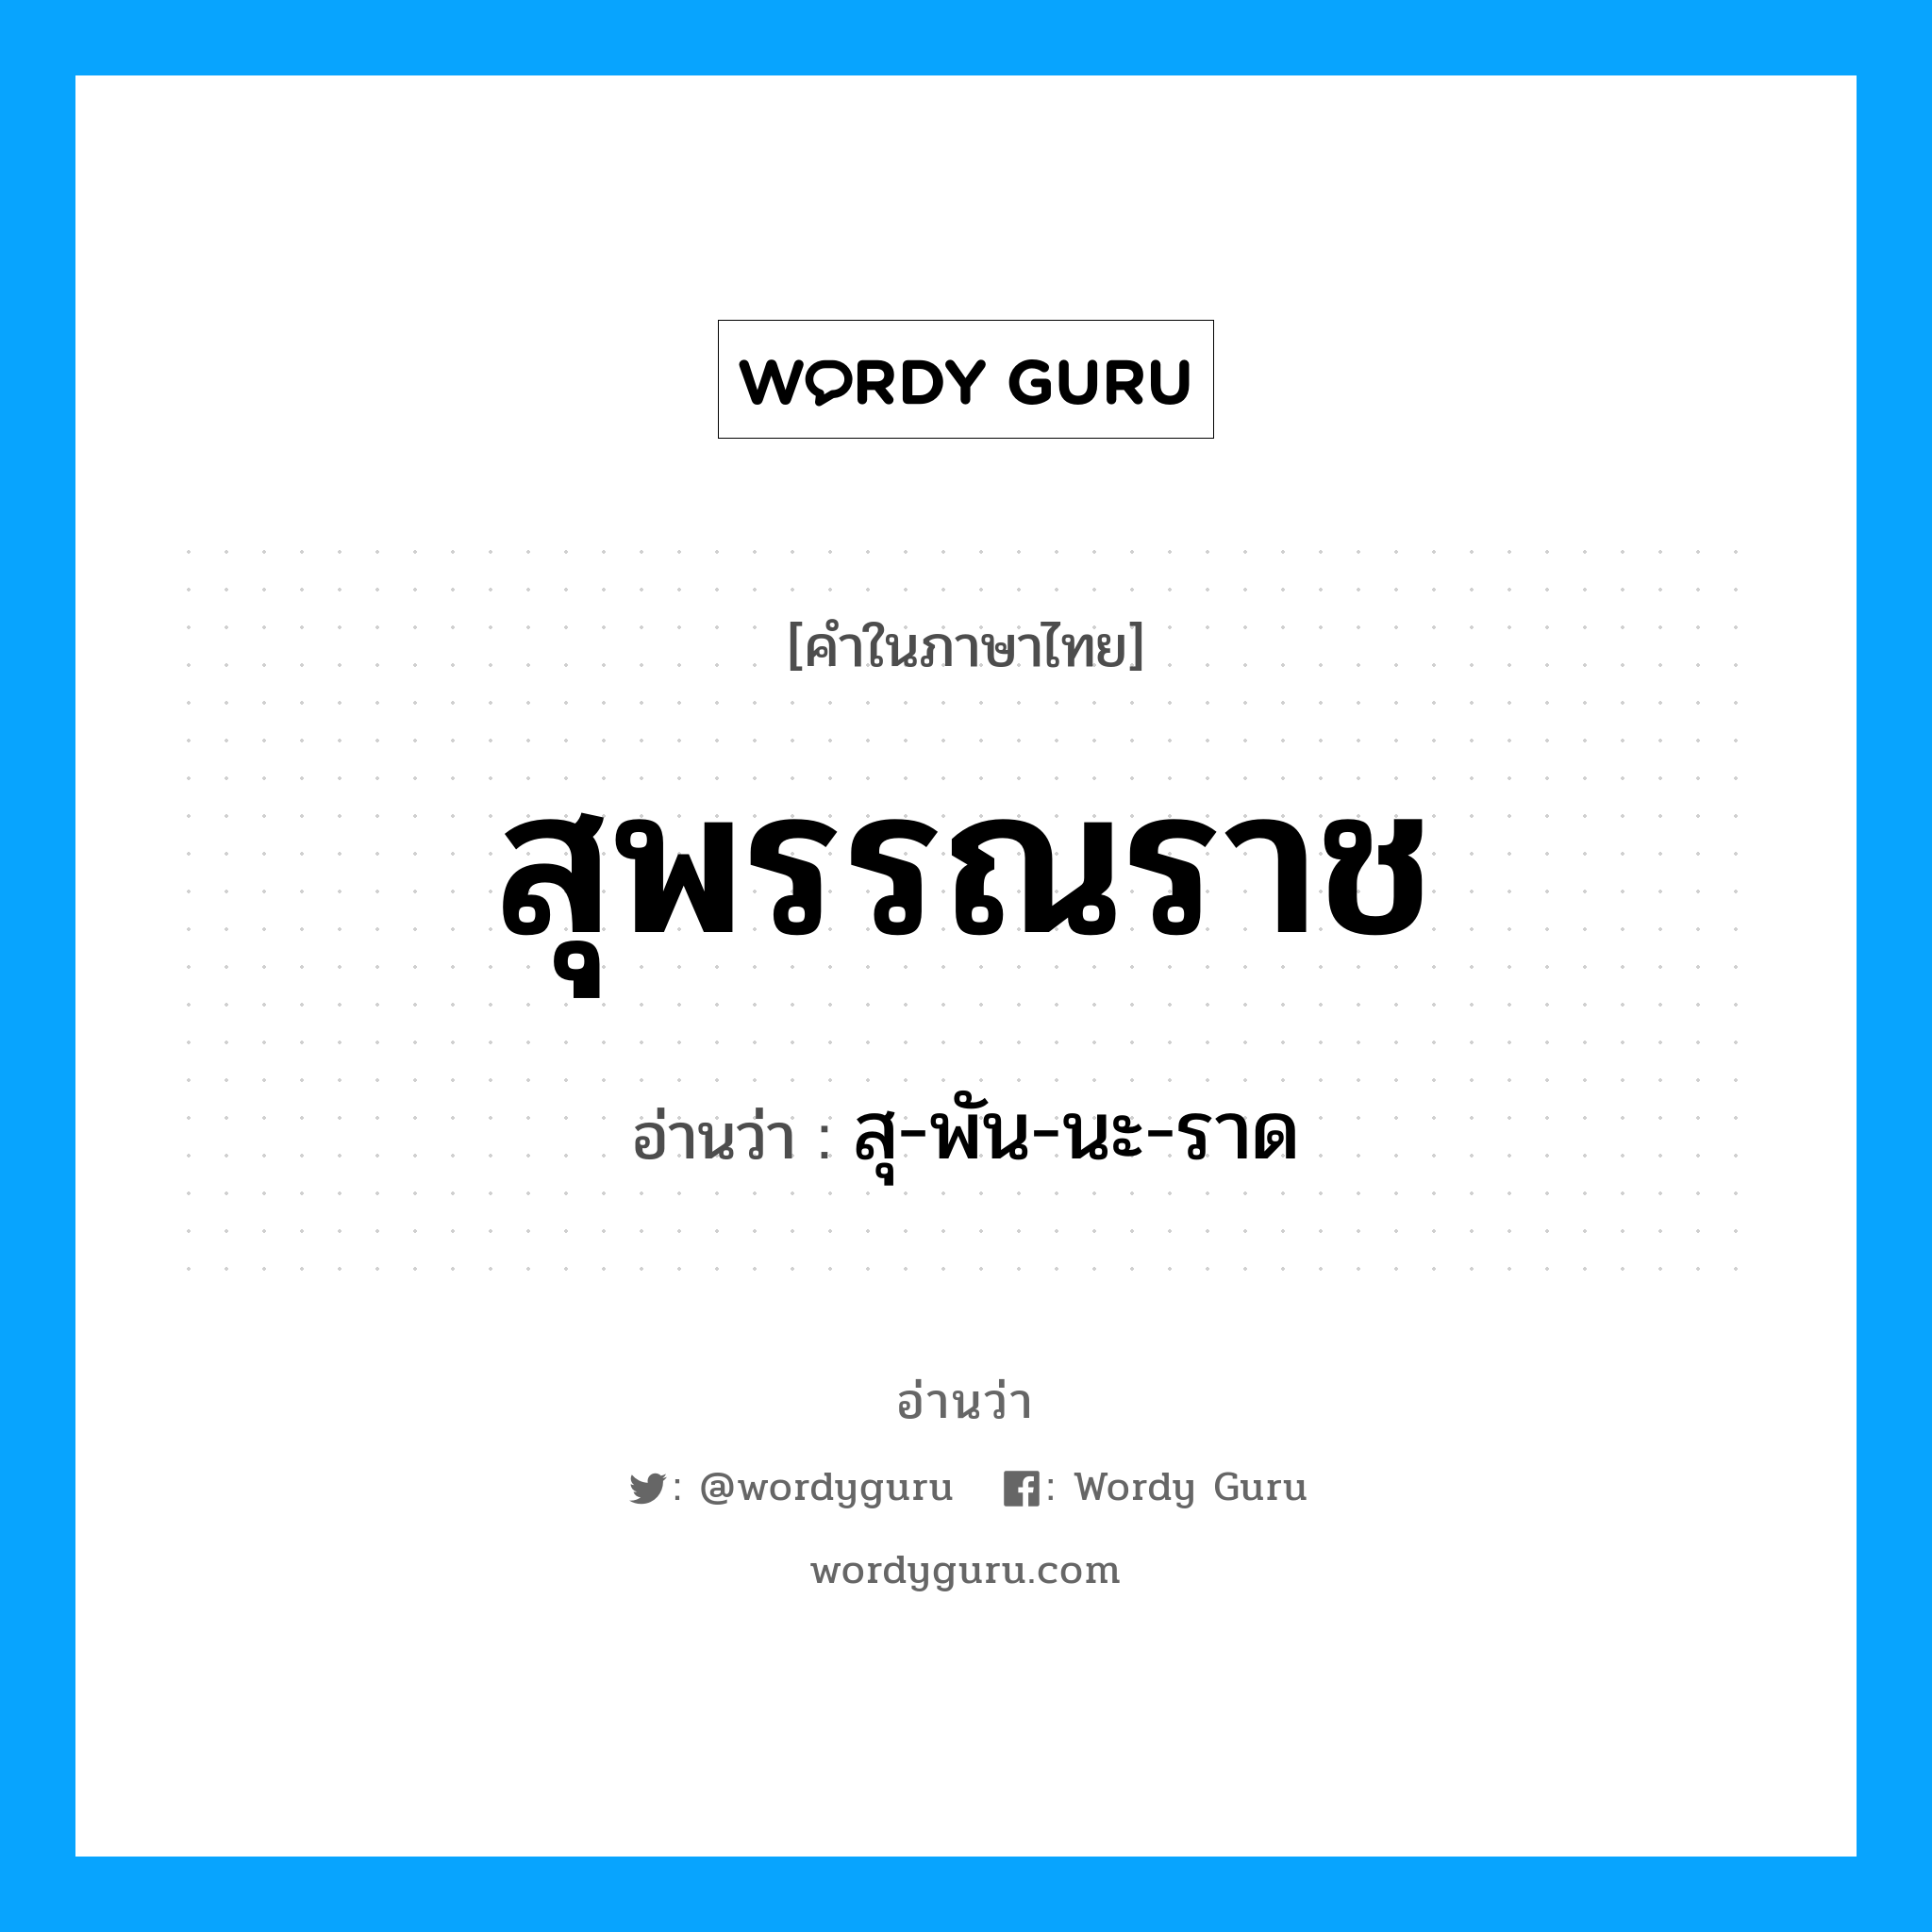 สุ-พัน-นะ-ราด เป็นคำอ่านของคำไหน?, คำในภาษาไทย สุ-พัน-นะ-ราด อ่านว่า สุพรรณราช